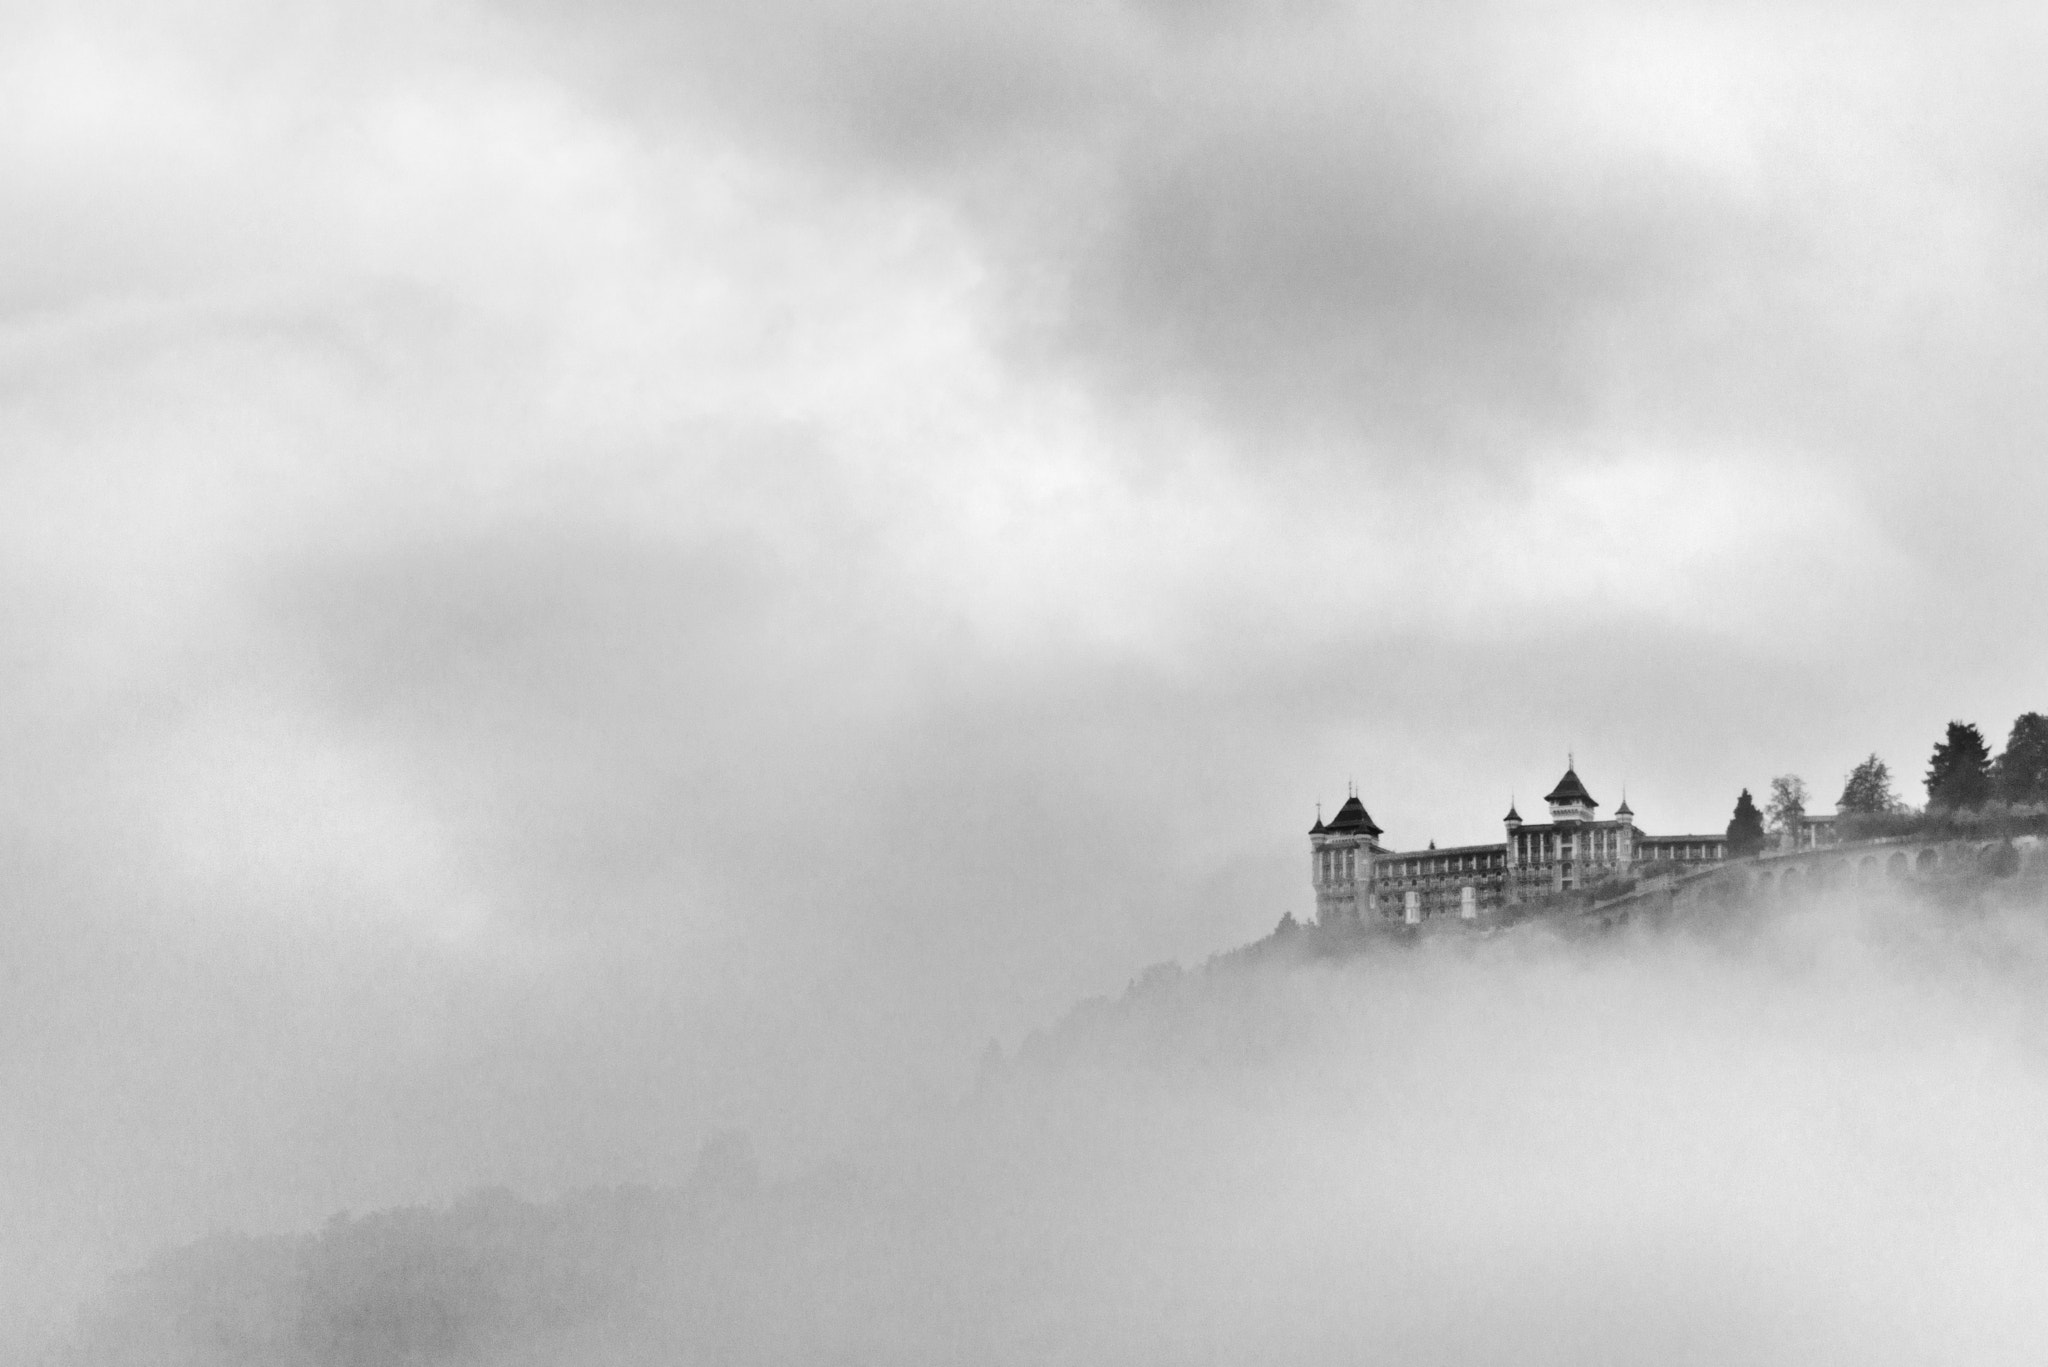 Nikon D800 + AF Nikkor 70-210mm f/4-5.6D sample photo. Castle in the clouds photography